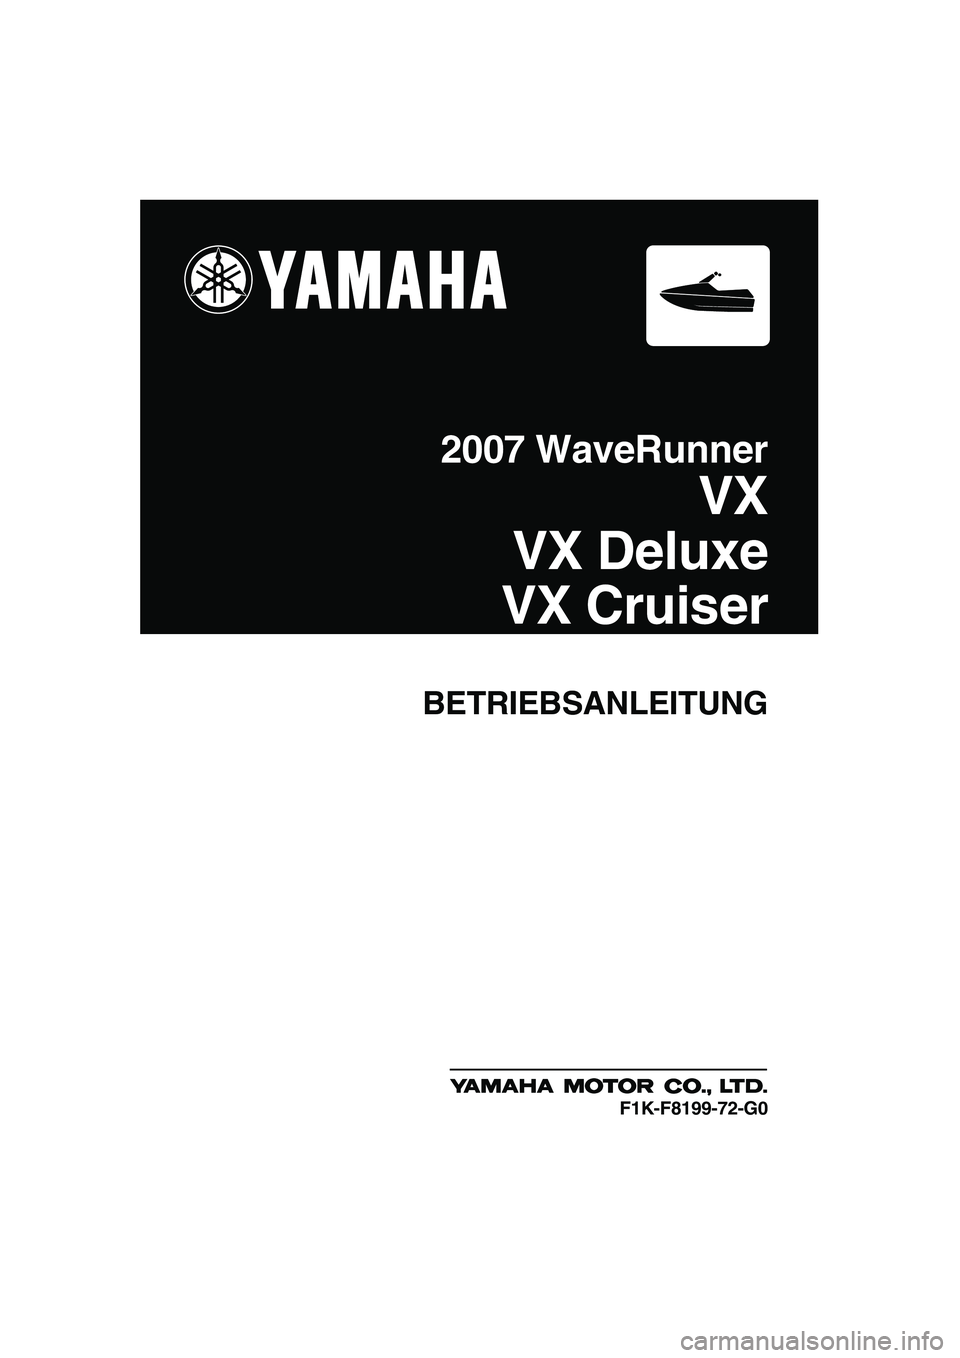 YAMAHA VX CRUISER 2007  Betriebsanleitungen (in German) BETRIEBSANLEITUNG
2007 WaveRunner
VX
VX Deluxe
VX Cruiser
F1K-F8199-72-G0
UF1K72G0.book  Page 1  Thursday, August 3, 2006  10:08 AM 